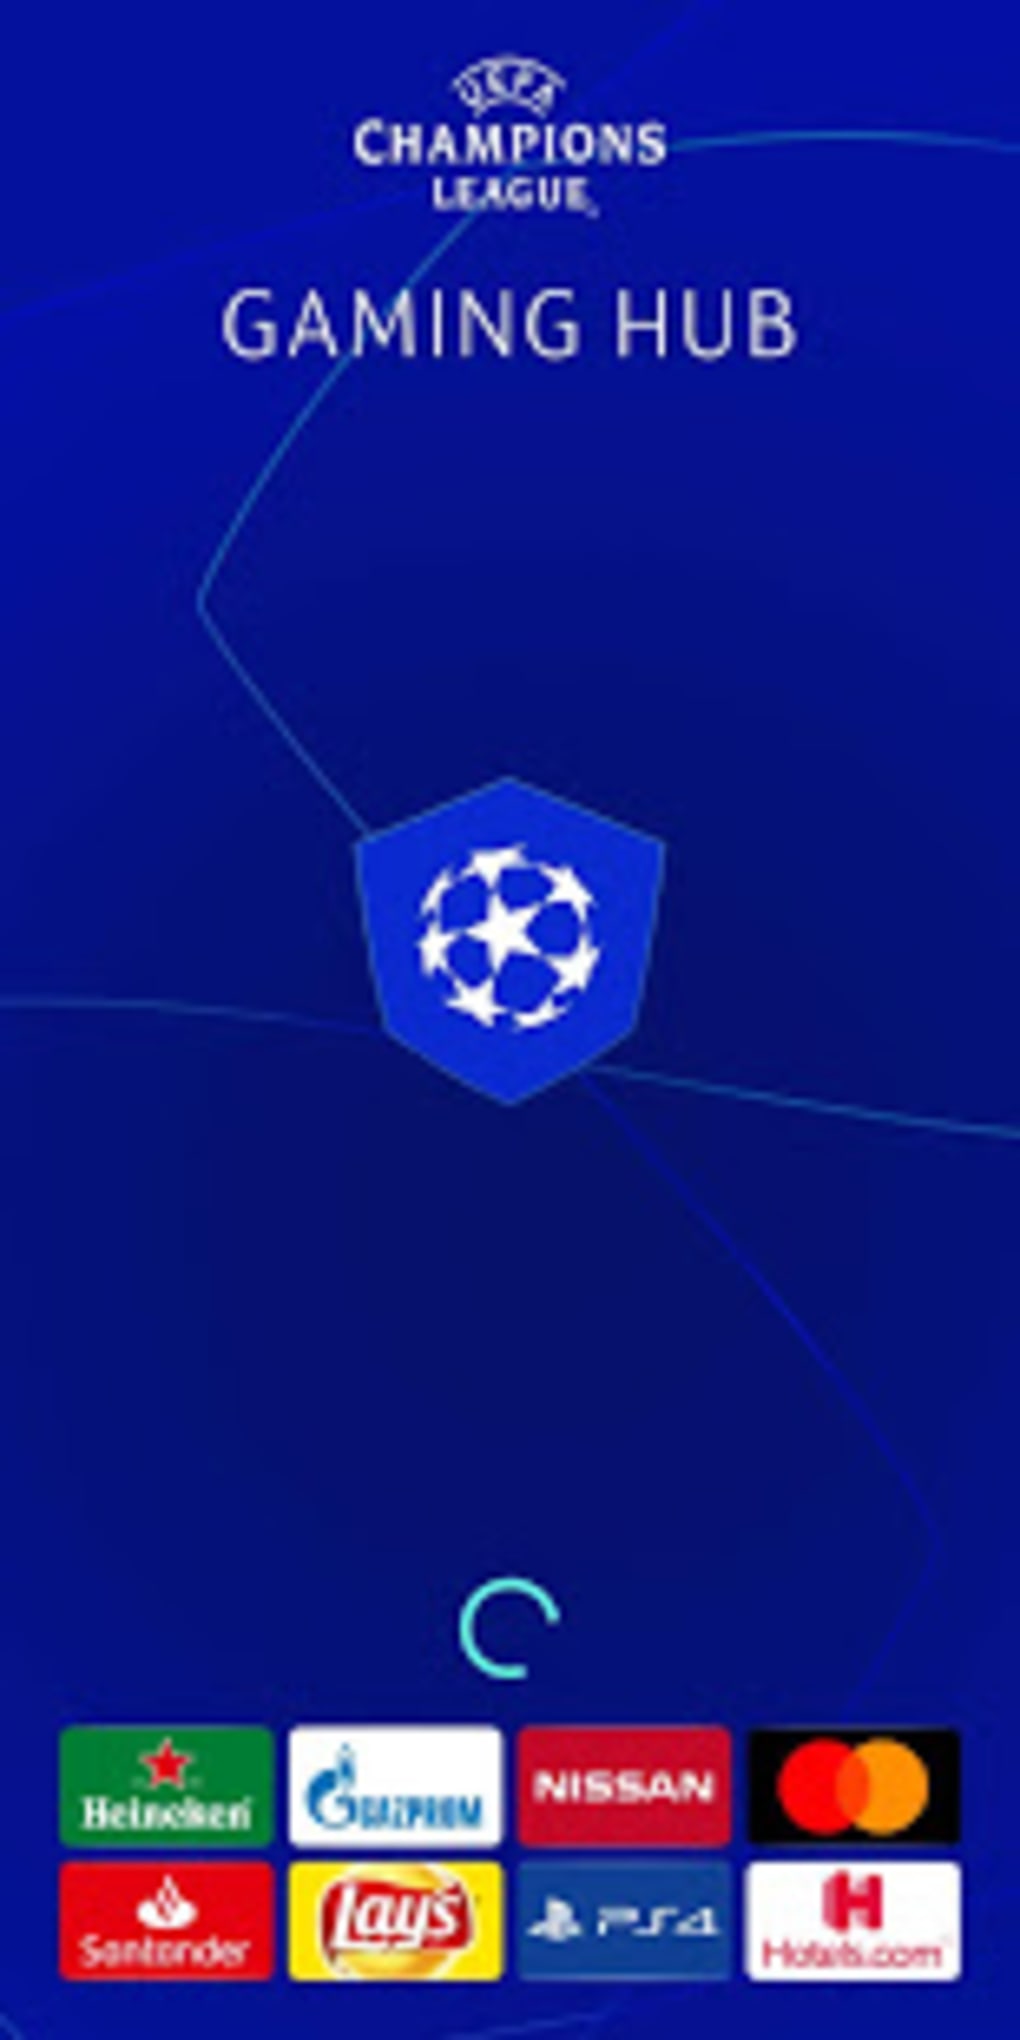 Armis  App Escoita estreia em jogo da UEFA Youth League